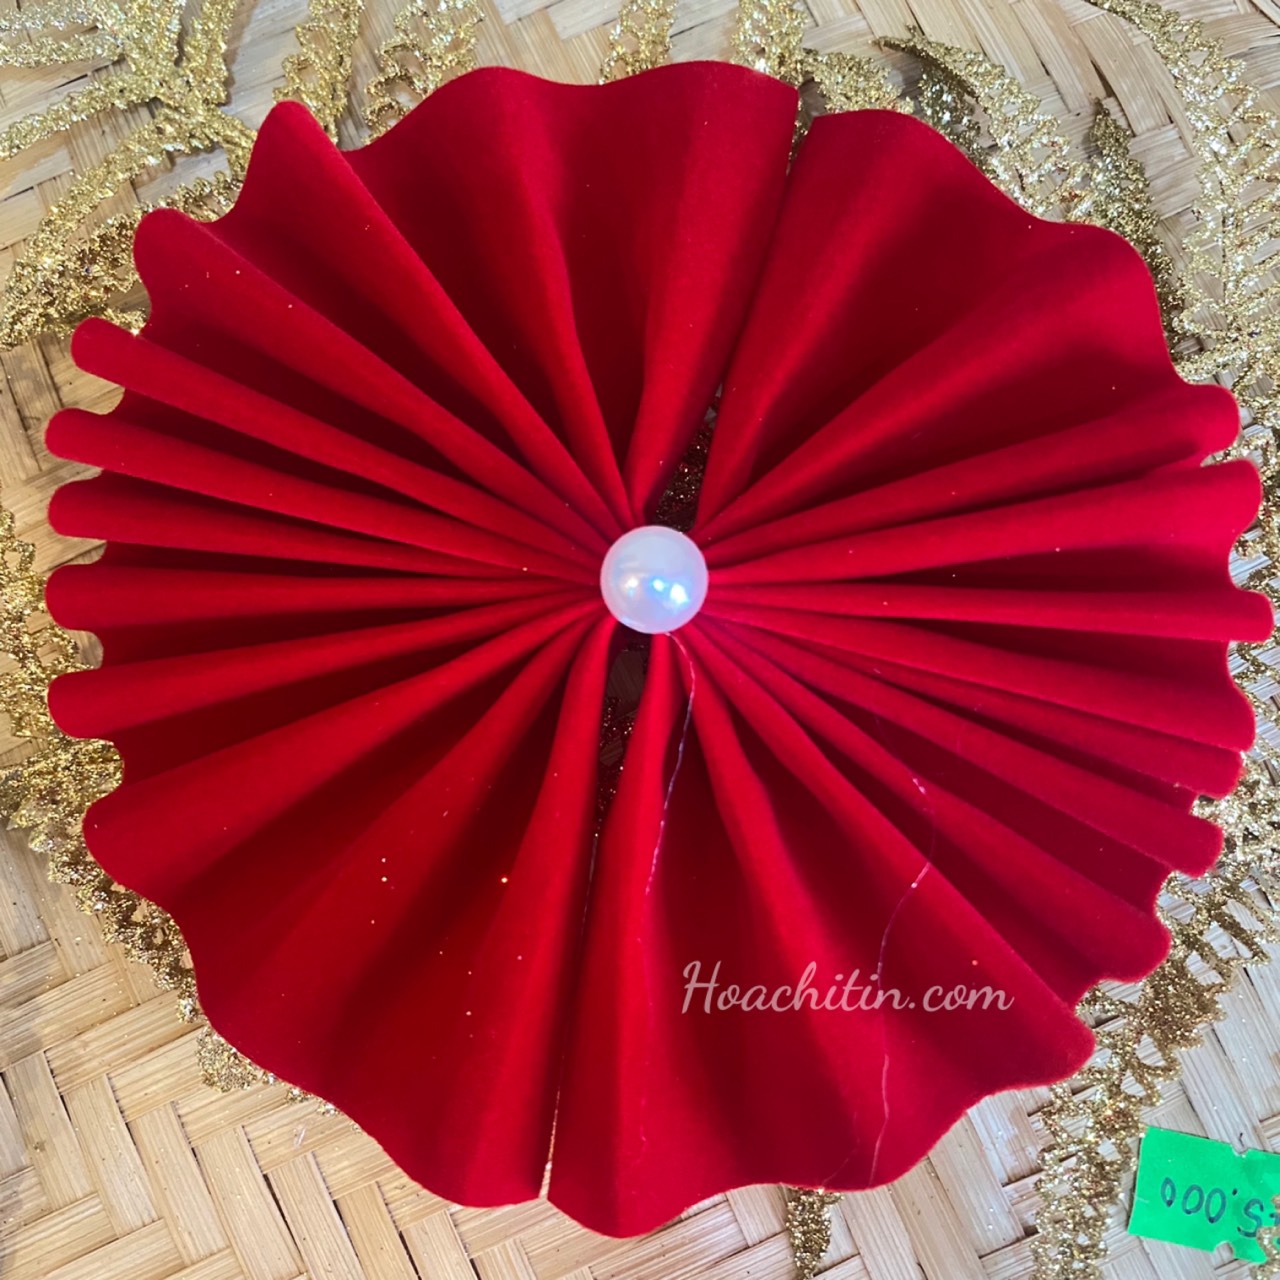 Quạt Nhung Đỏ Trang Trí Vòng Hoa Tết size 10cm